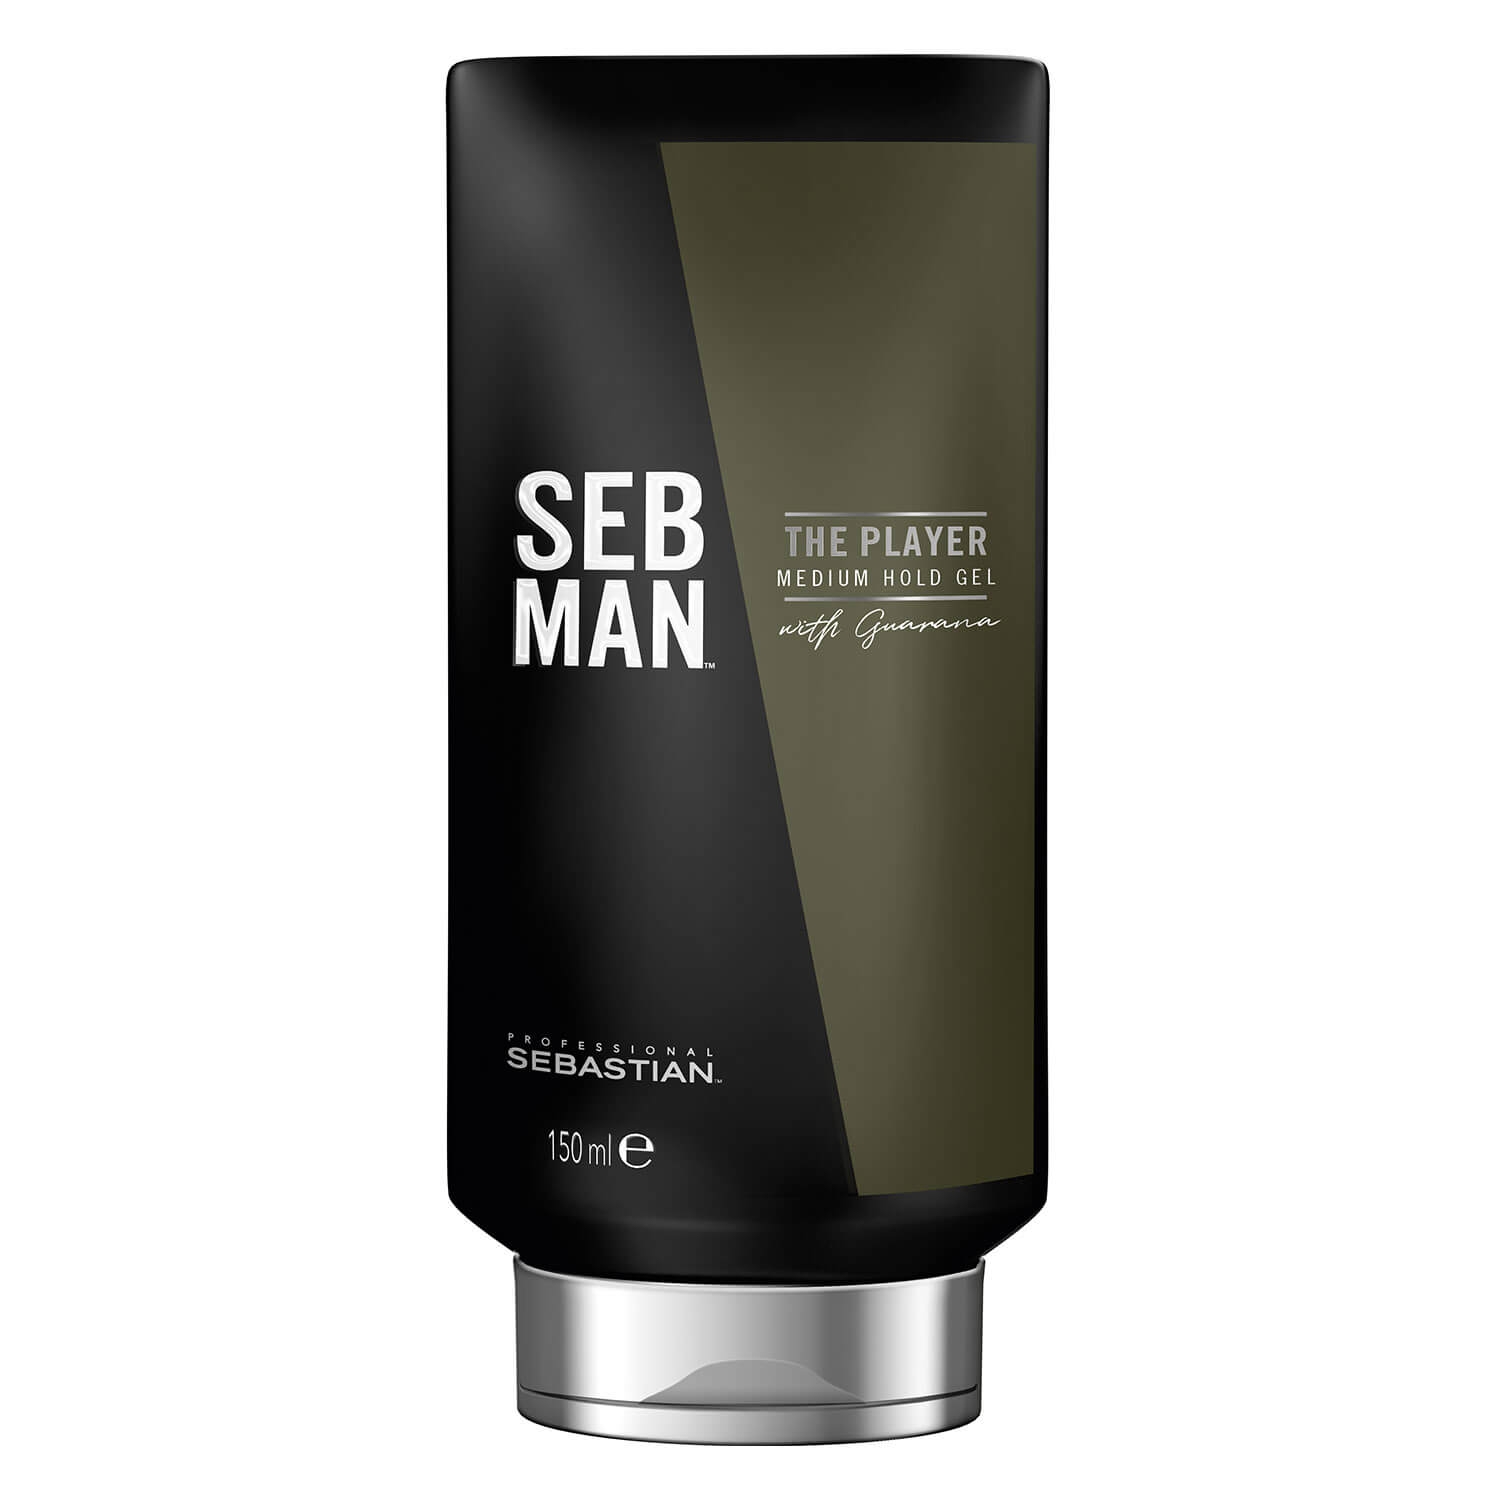 Produktbild von SEB MAN - The Player Medium Hold Gel